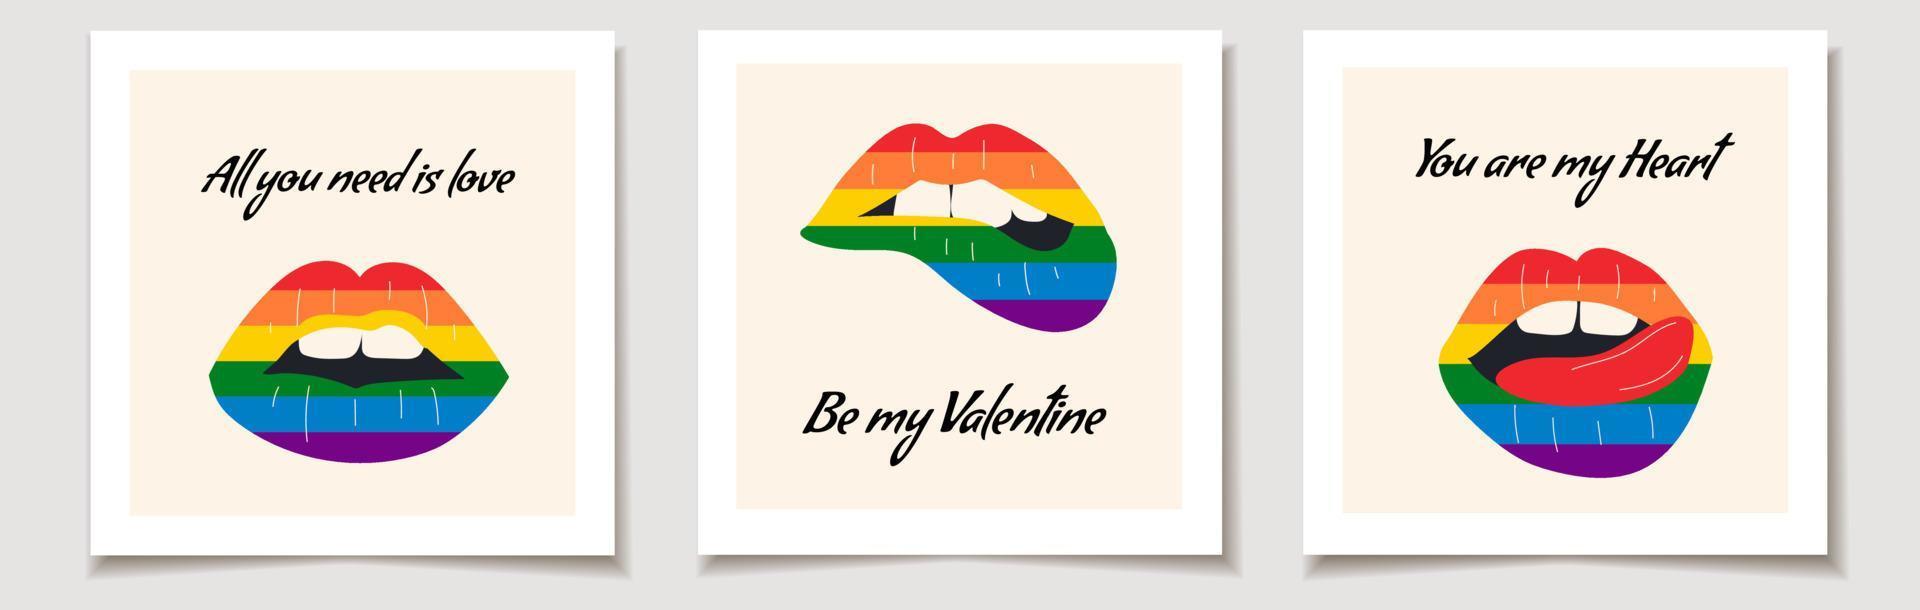 impostato di San Valentino giorno arcobaleno labbra. bacio illustrazione.i vettore illustrazione